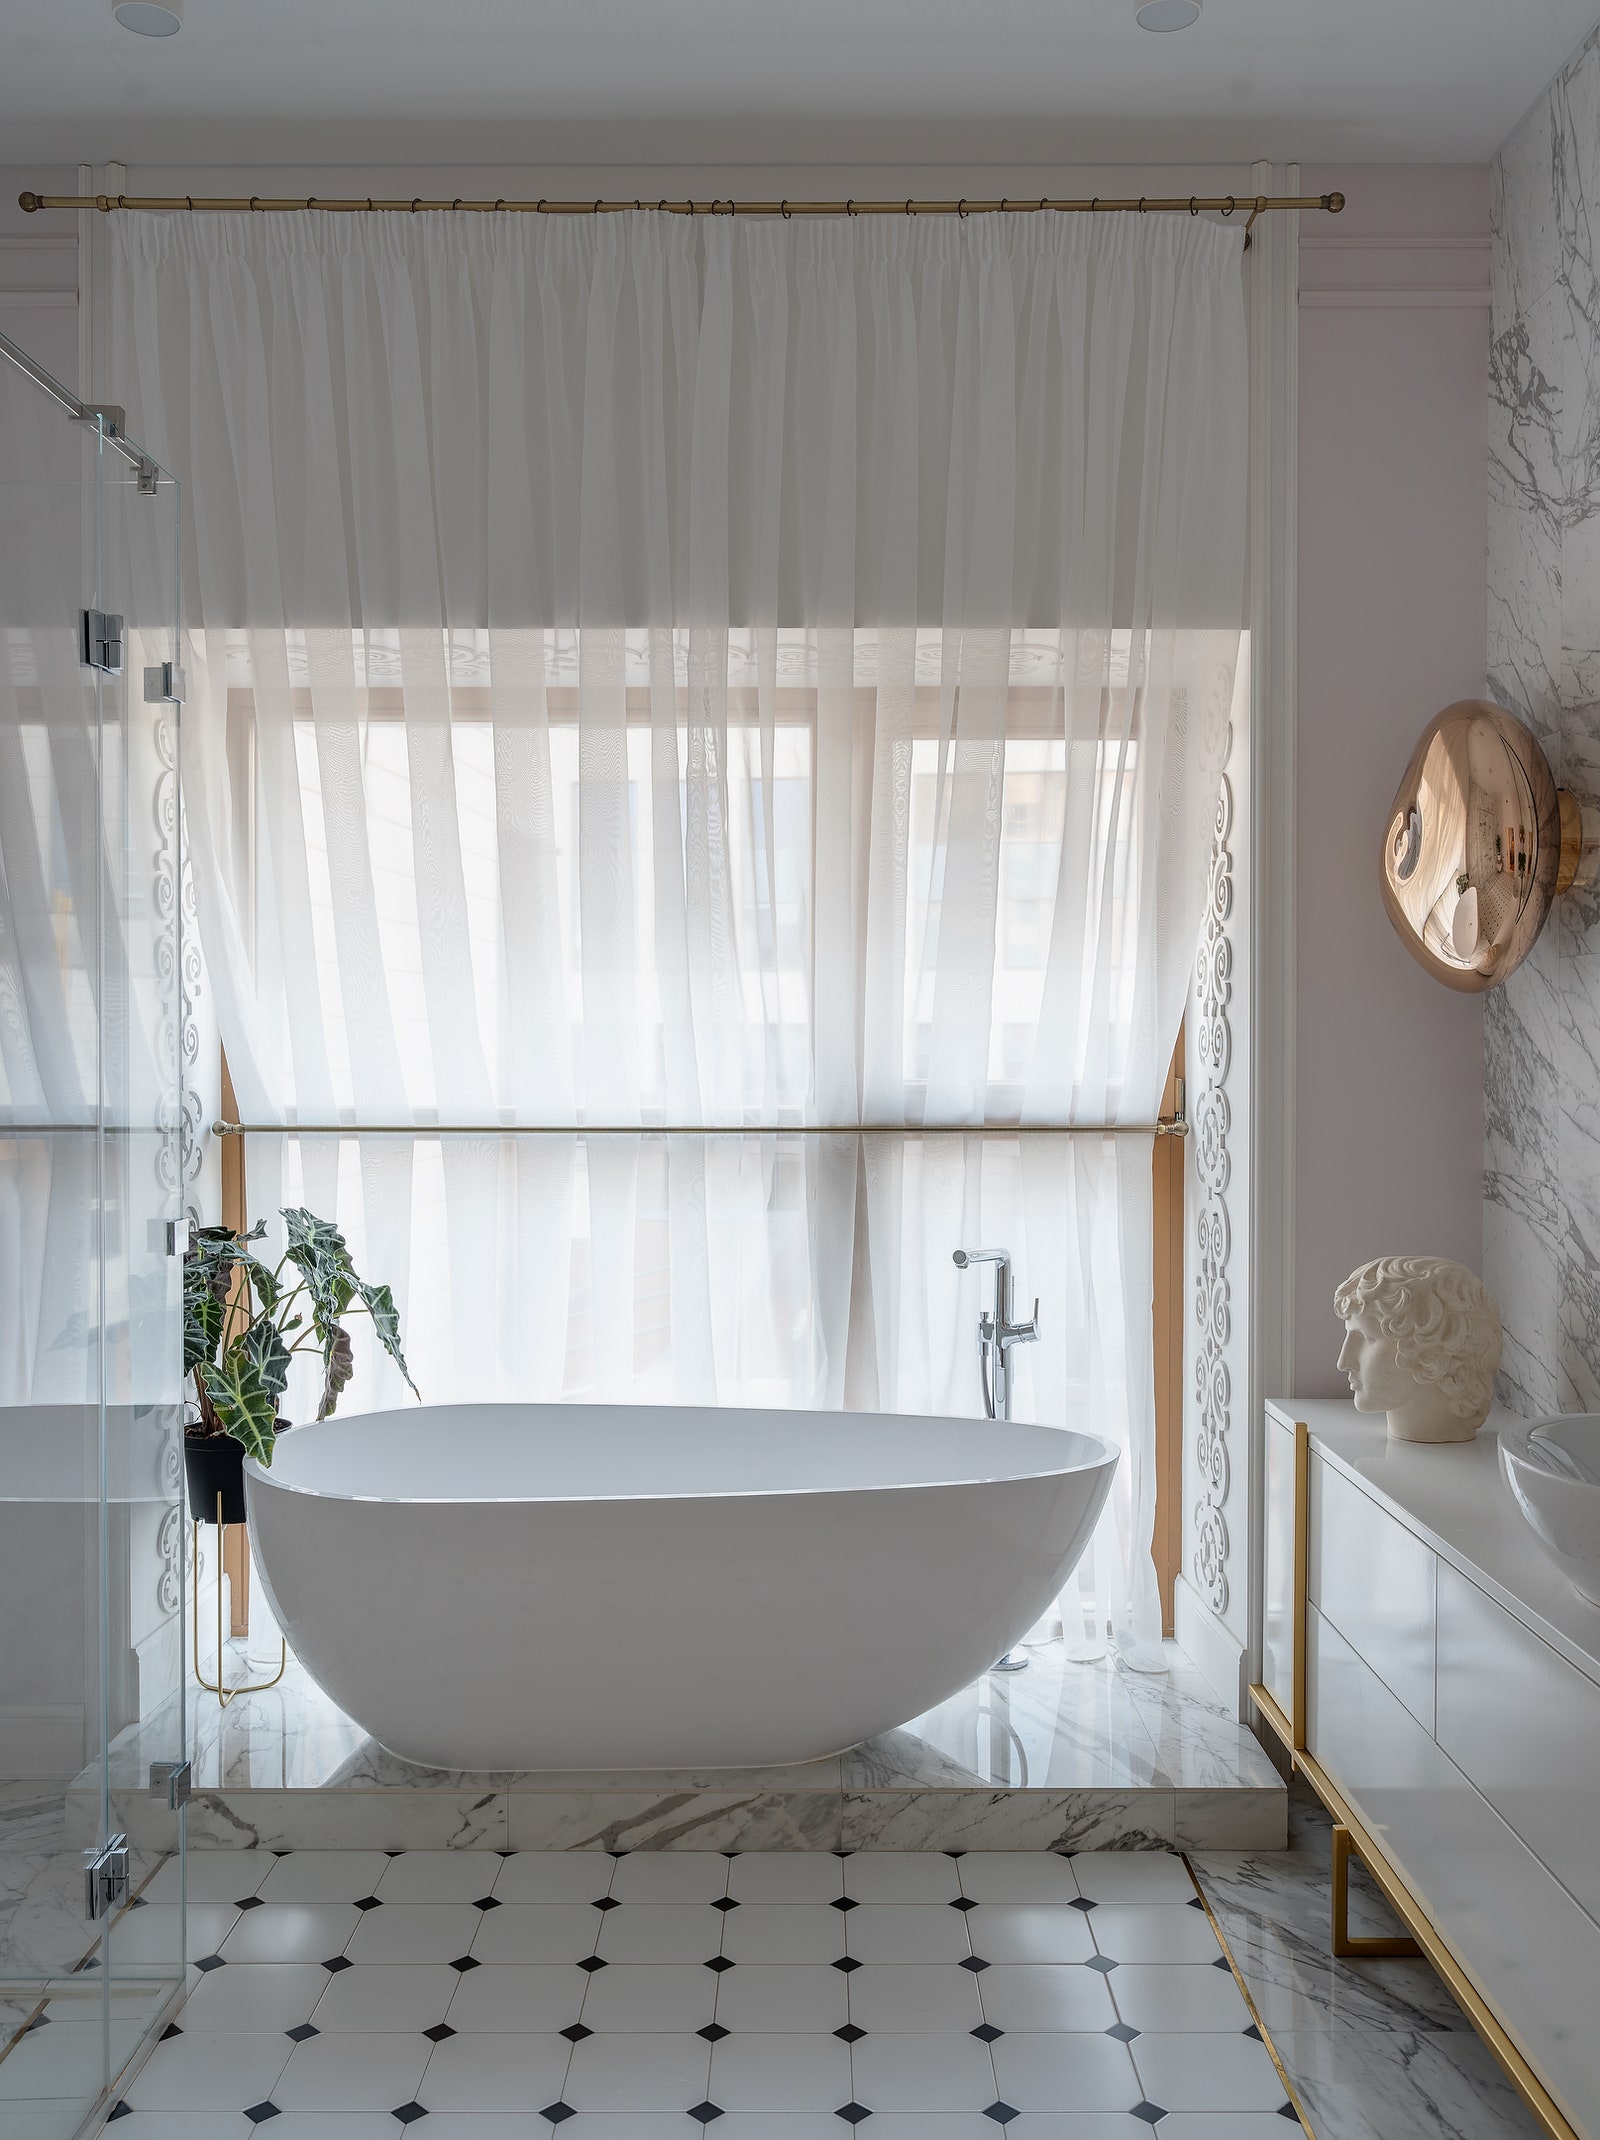 Ванная комната. Асимметричная ванна “Цвет и стиль” установлена в нише окна.